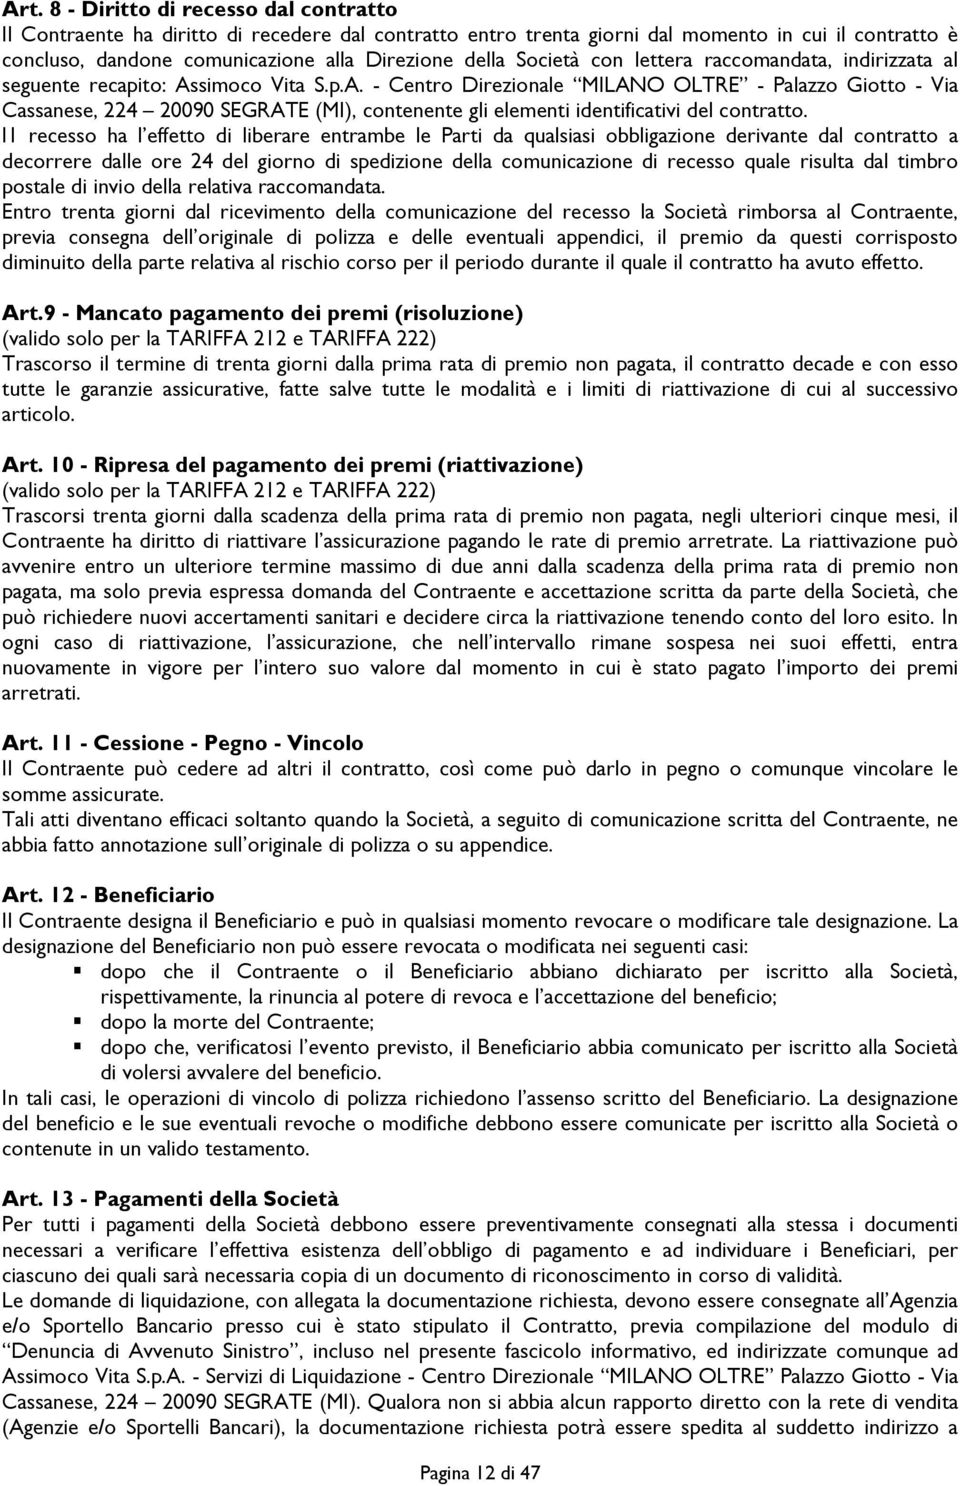 simoco Vita S.p.A. - Centro Direzionale MILANO OLTRE - Palazzo Giotto - Via Cassanese, 224 20090 SEGRATE (MI), contenente gli elementi identificativi del contratto.